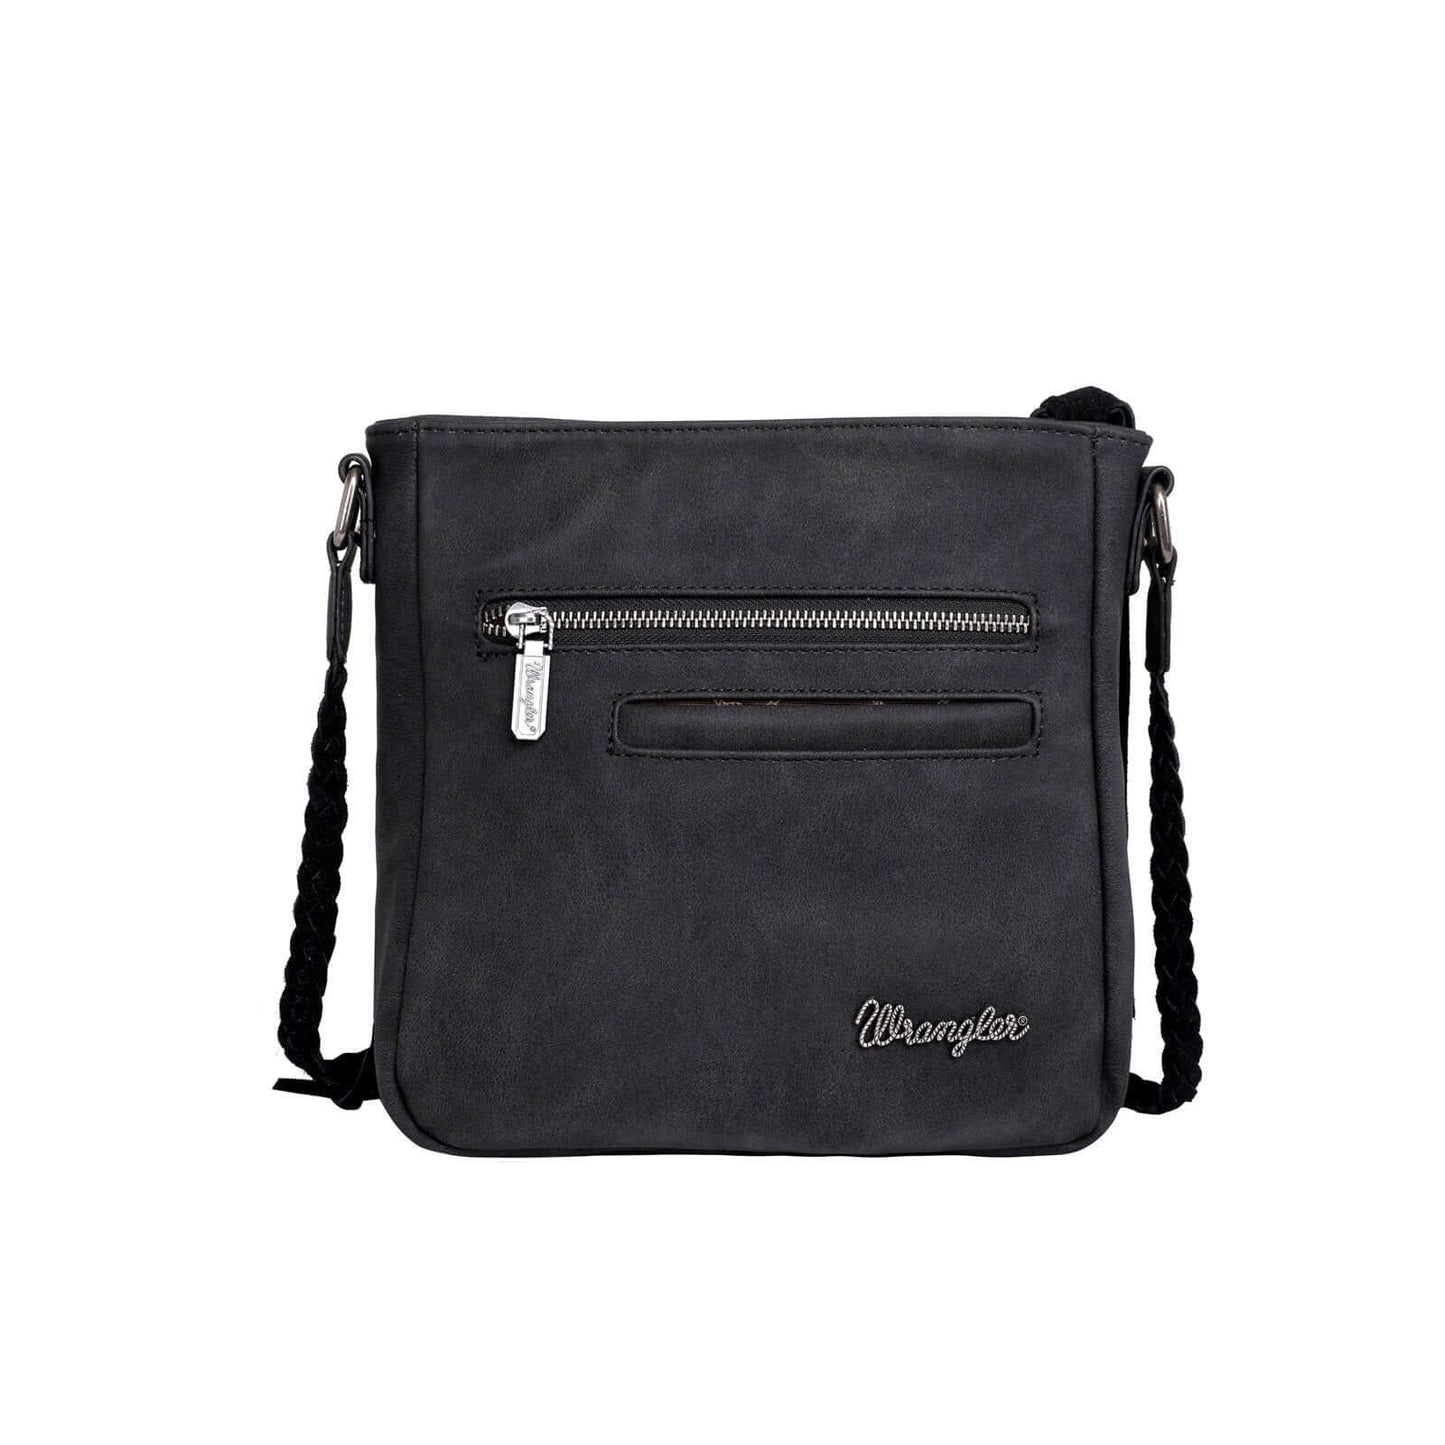 WG11-8360 BK-1- Wrangler leather fringe crossbody bag back- Black